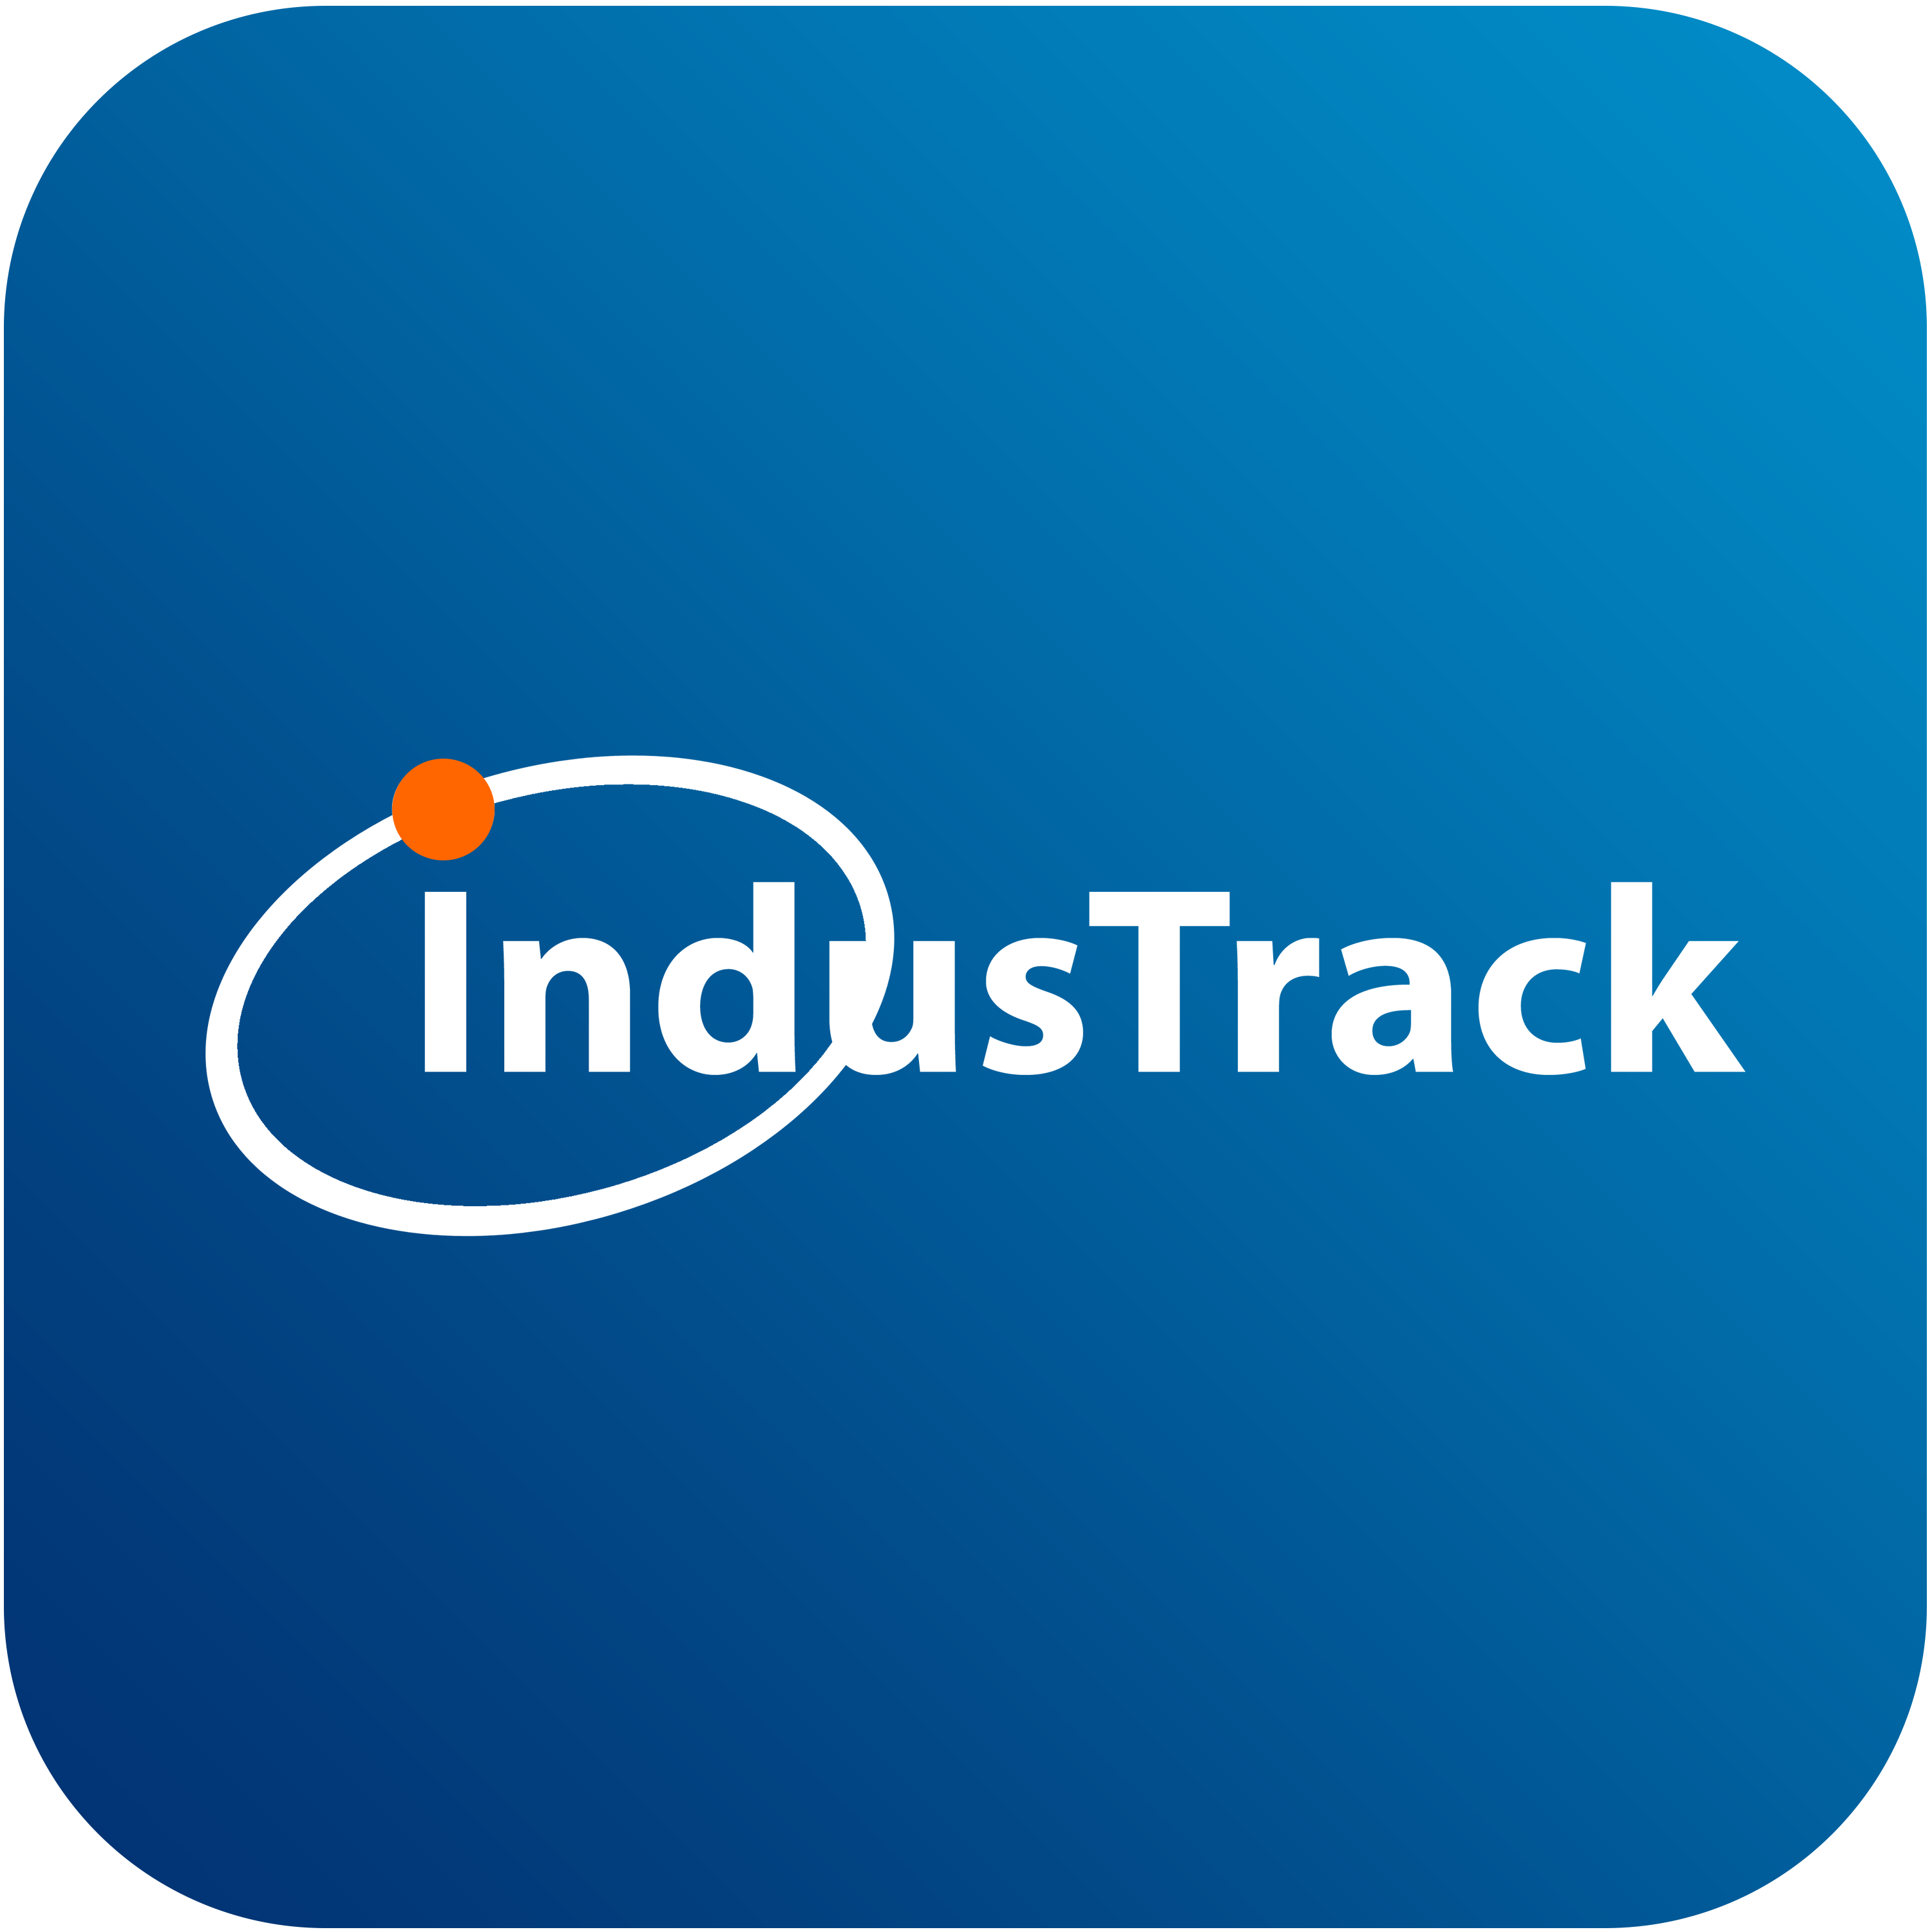 IndusTrack app logo